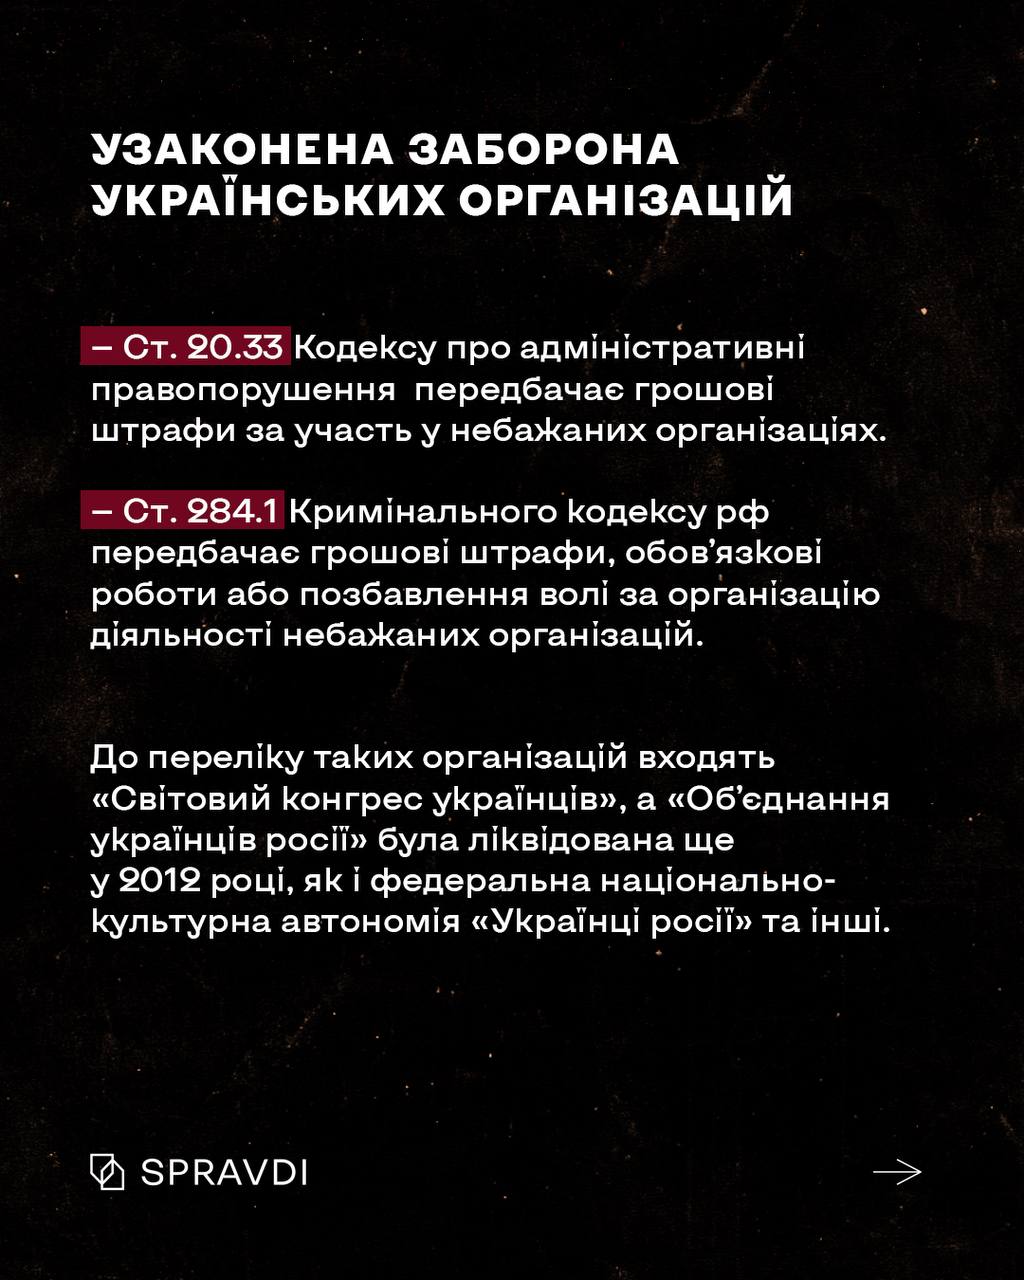 кремль готувався до геноциду українців навіть на законодавчому рівні